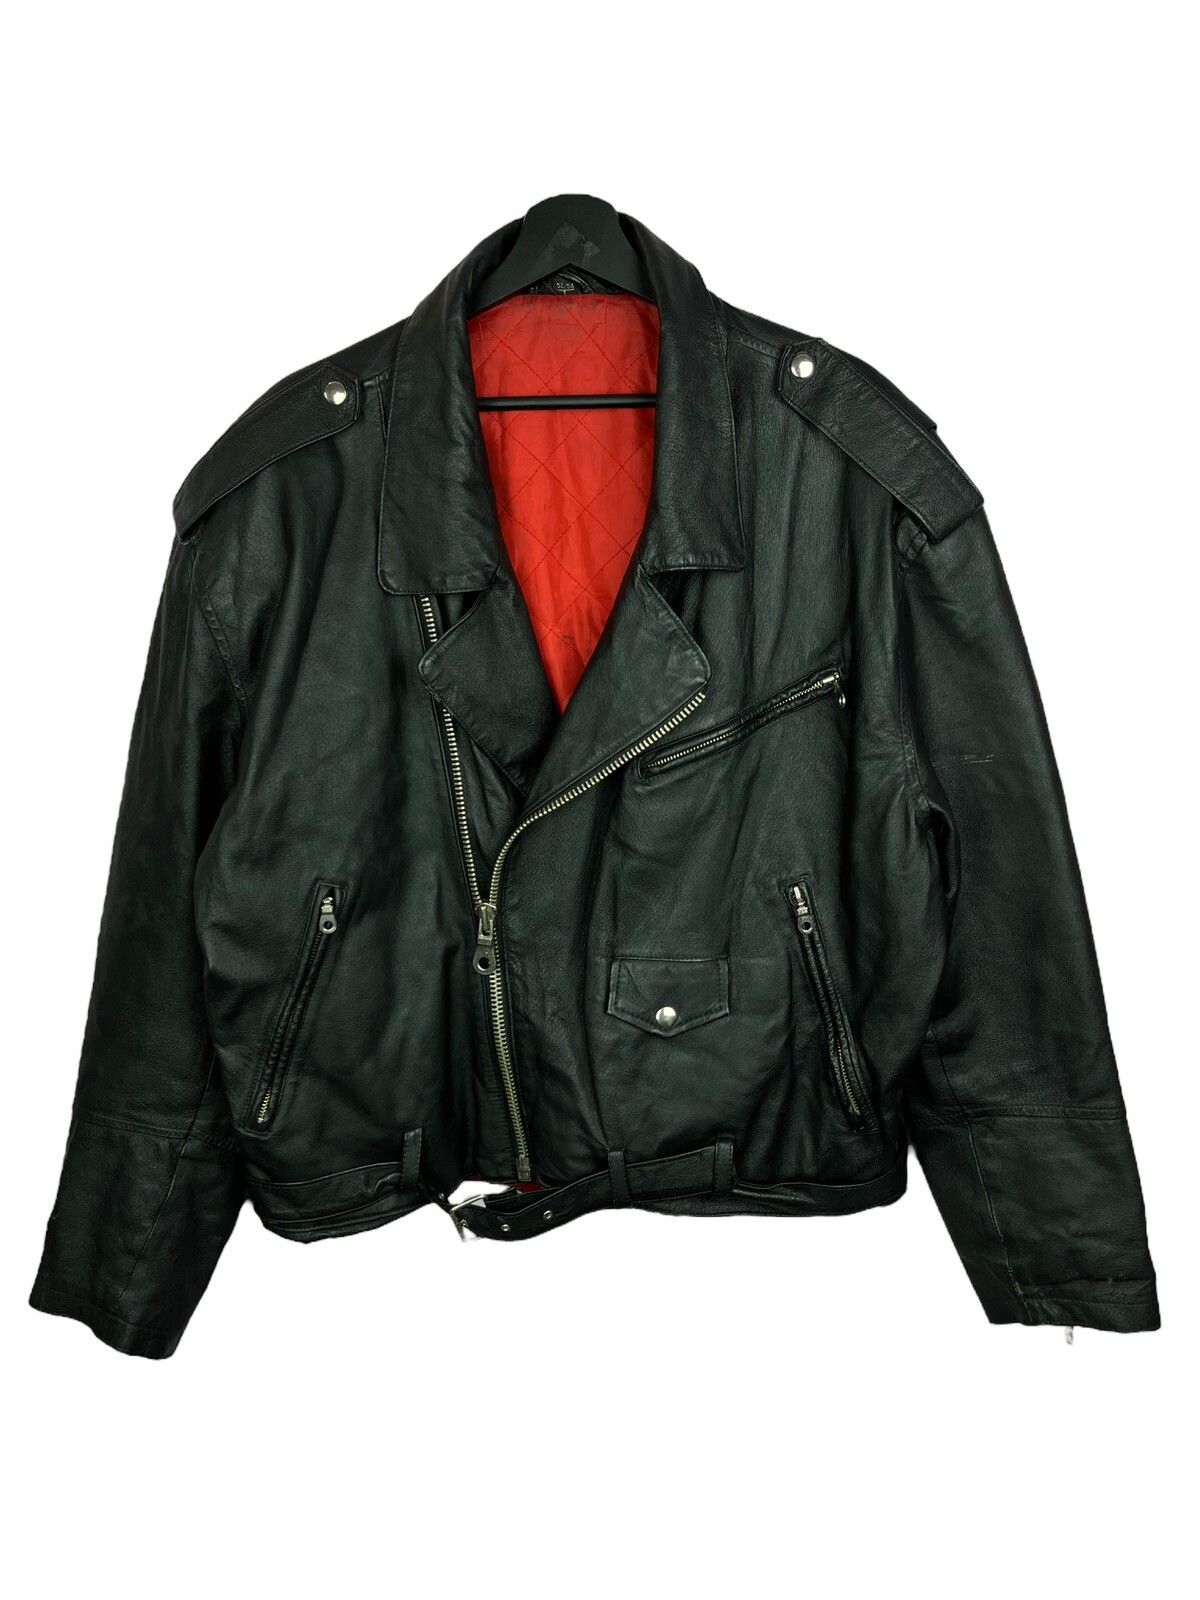 Vintage Vintage 90s Avanti Moto Racing Leather Jacket | Grailed